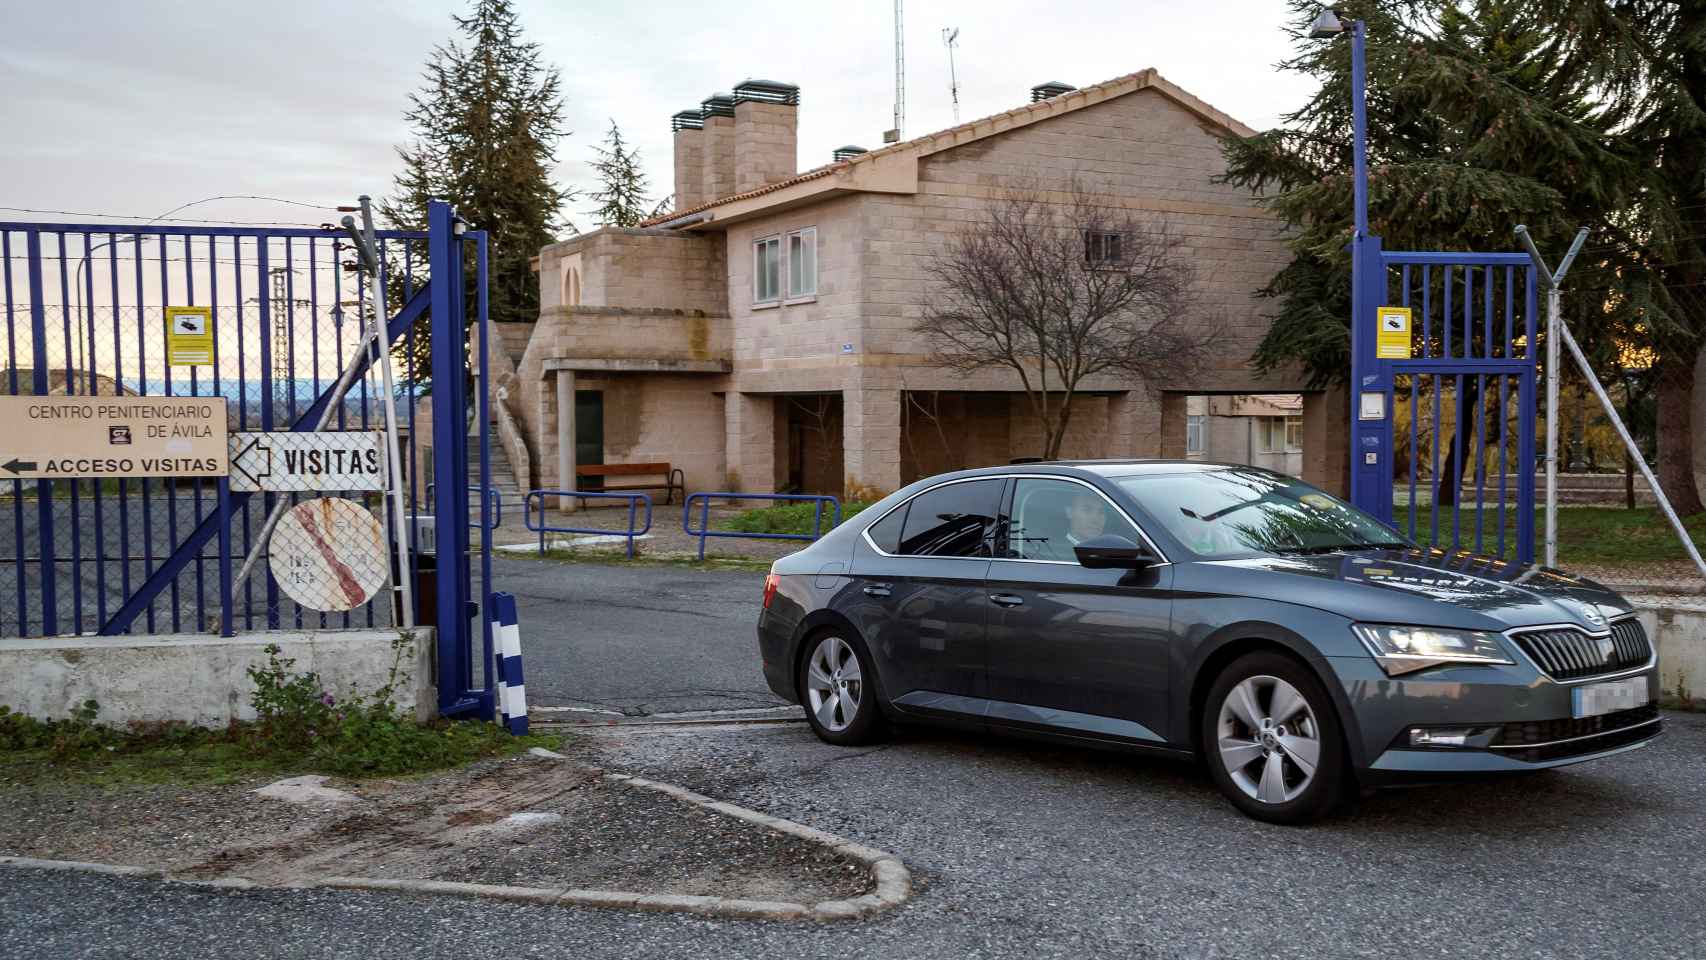 Detalle del coche abandonado el centro penitenciario de Brieva, en Ávila, donde cumple su condena Urdangarin.